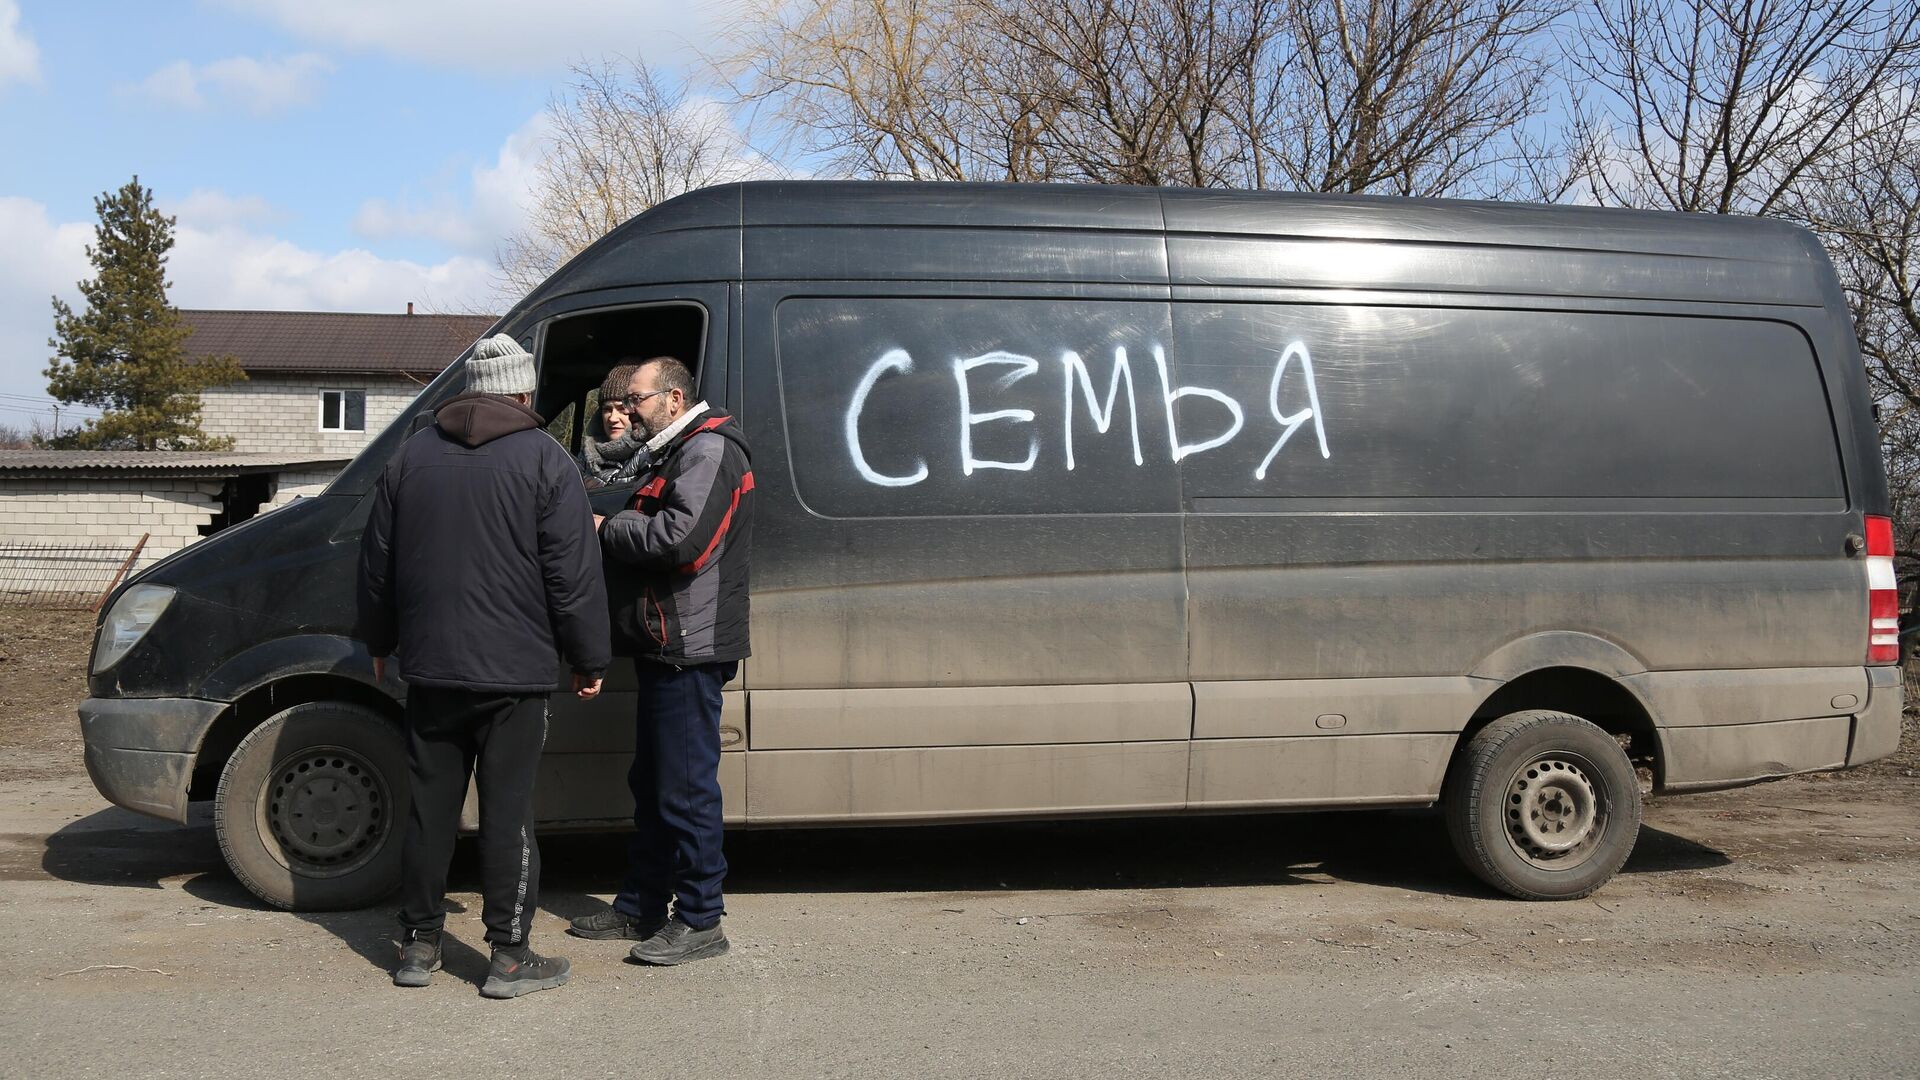 Жители покидают Мариуполь на машине с надписью Семья - РИА Новости, 1920, 20.03.2022